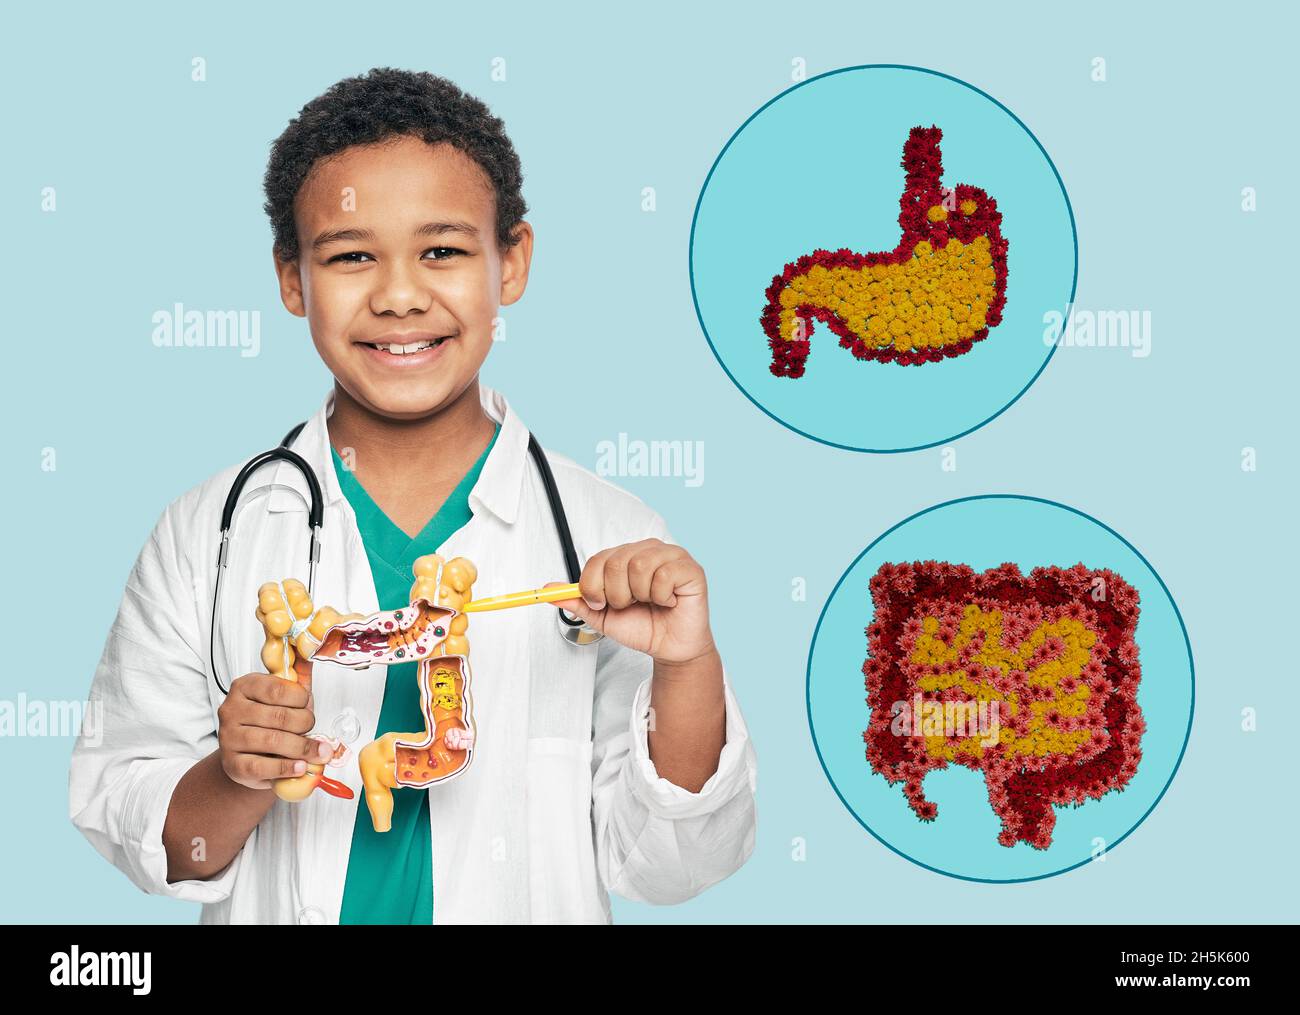 Salute del sistema digestivo del bambino. I punti del ragazzo africano sull'intestino anatomico modellano vicino alle icone dell'intestino e dello stomaco su sfondo blu Foto Stock